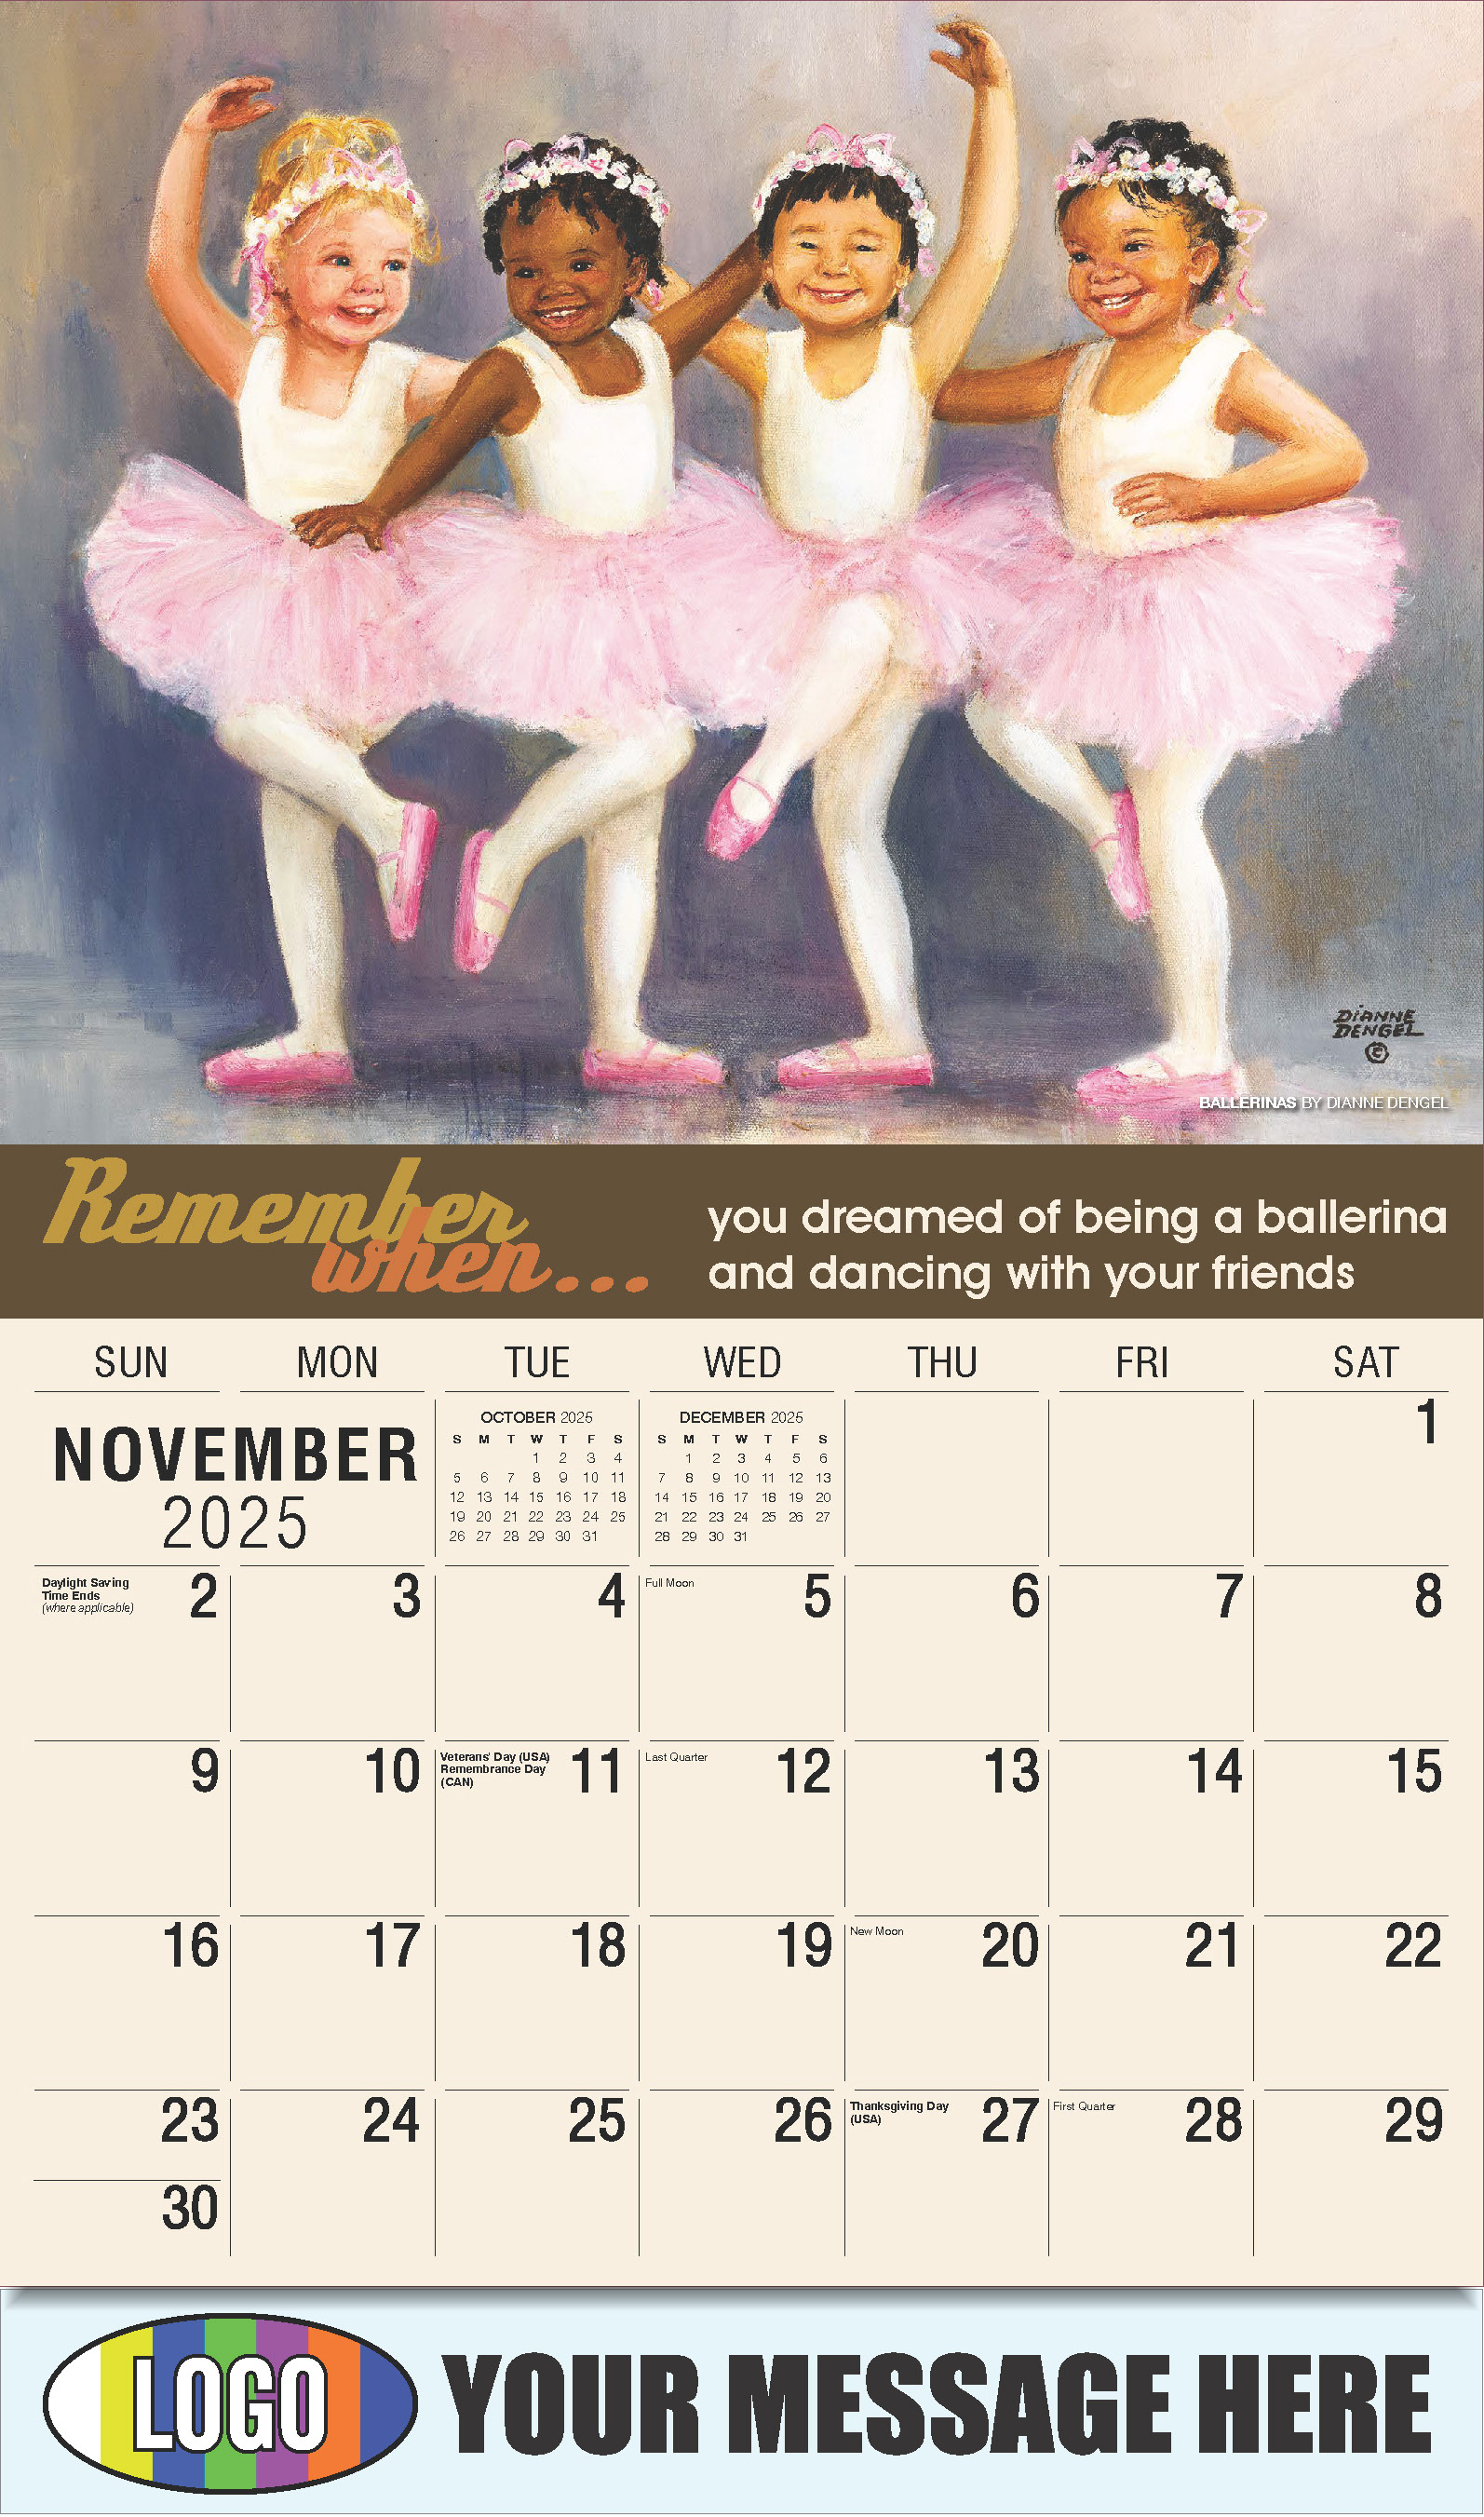 Remember When 2025 Business Advertising Calendar - November